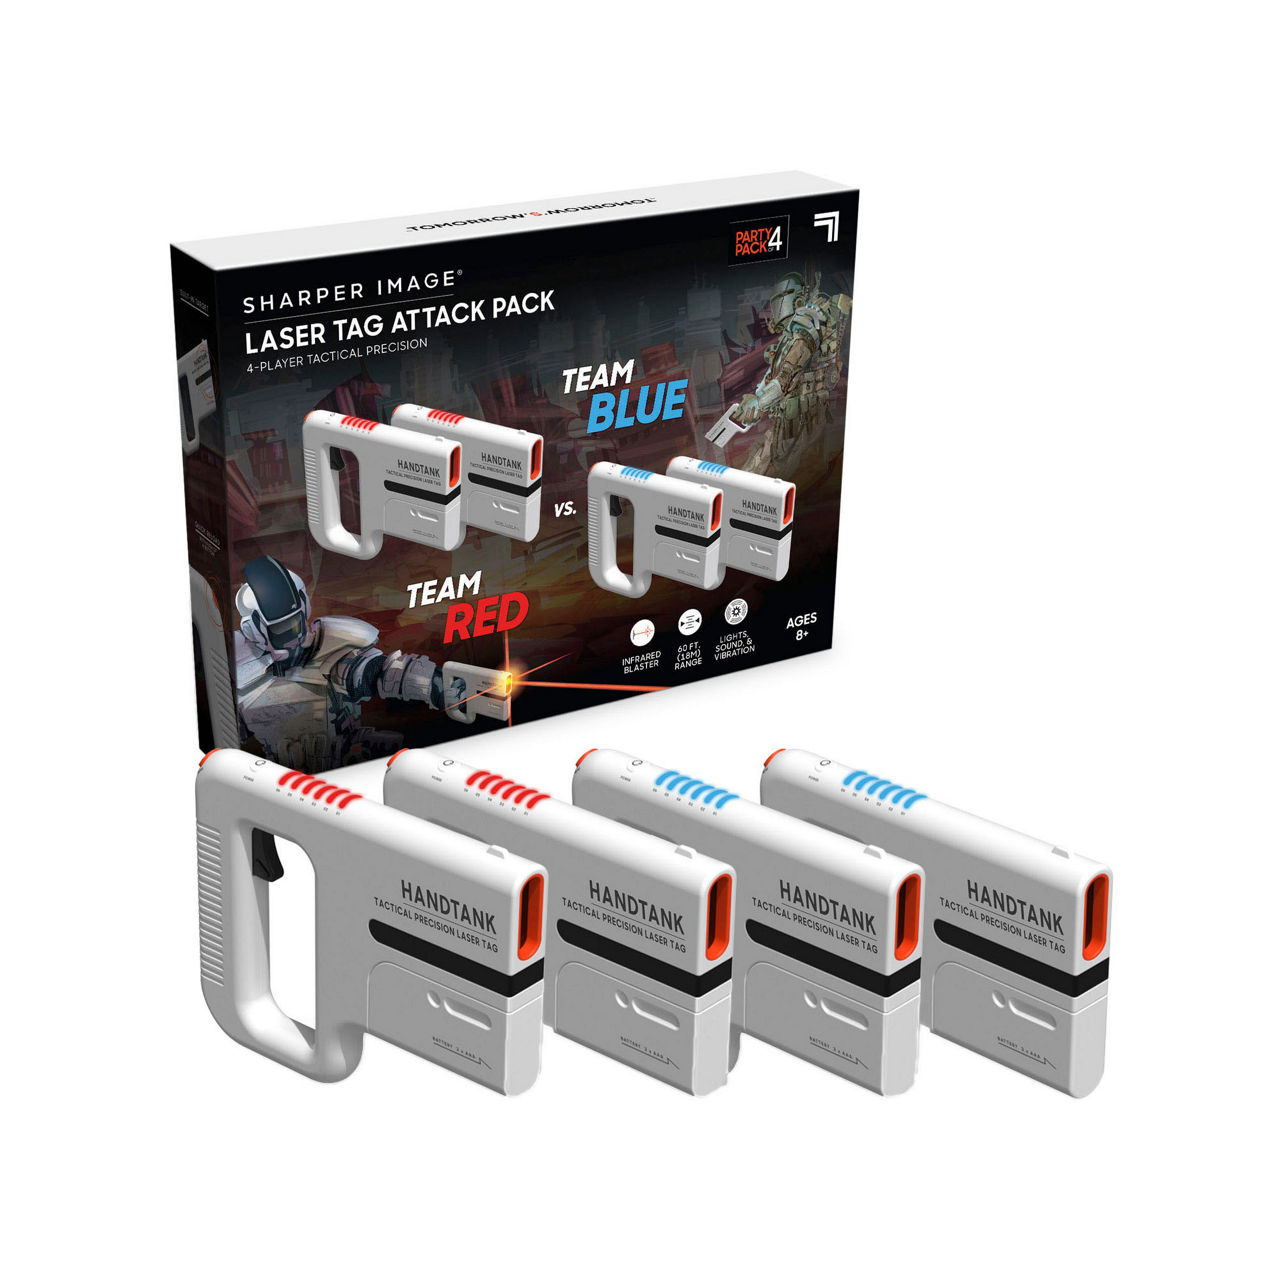 Handtank Laser Tag Attack Pack Sharper Image in Vendita Online